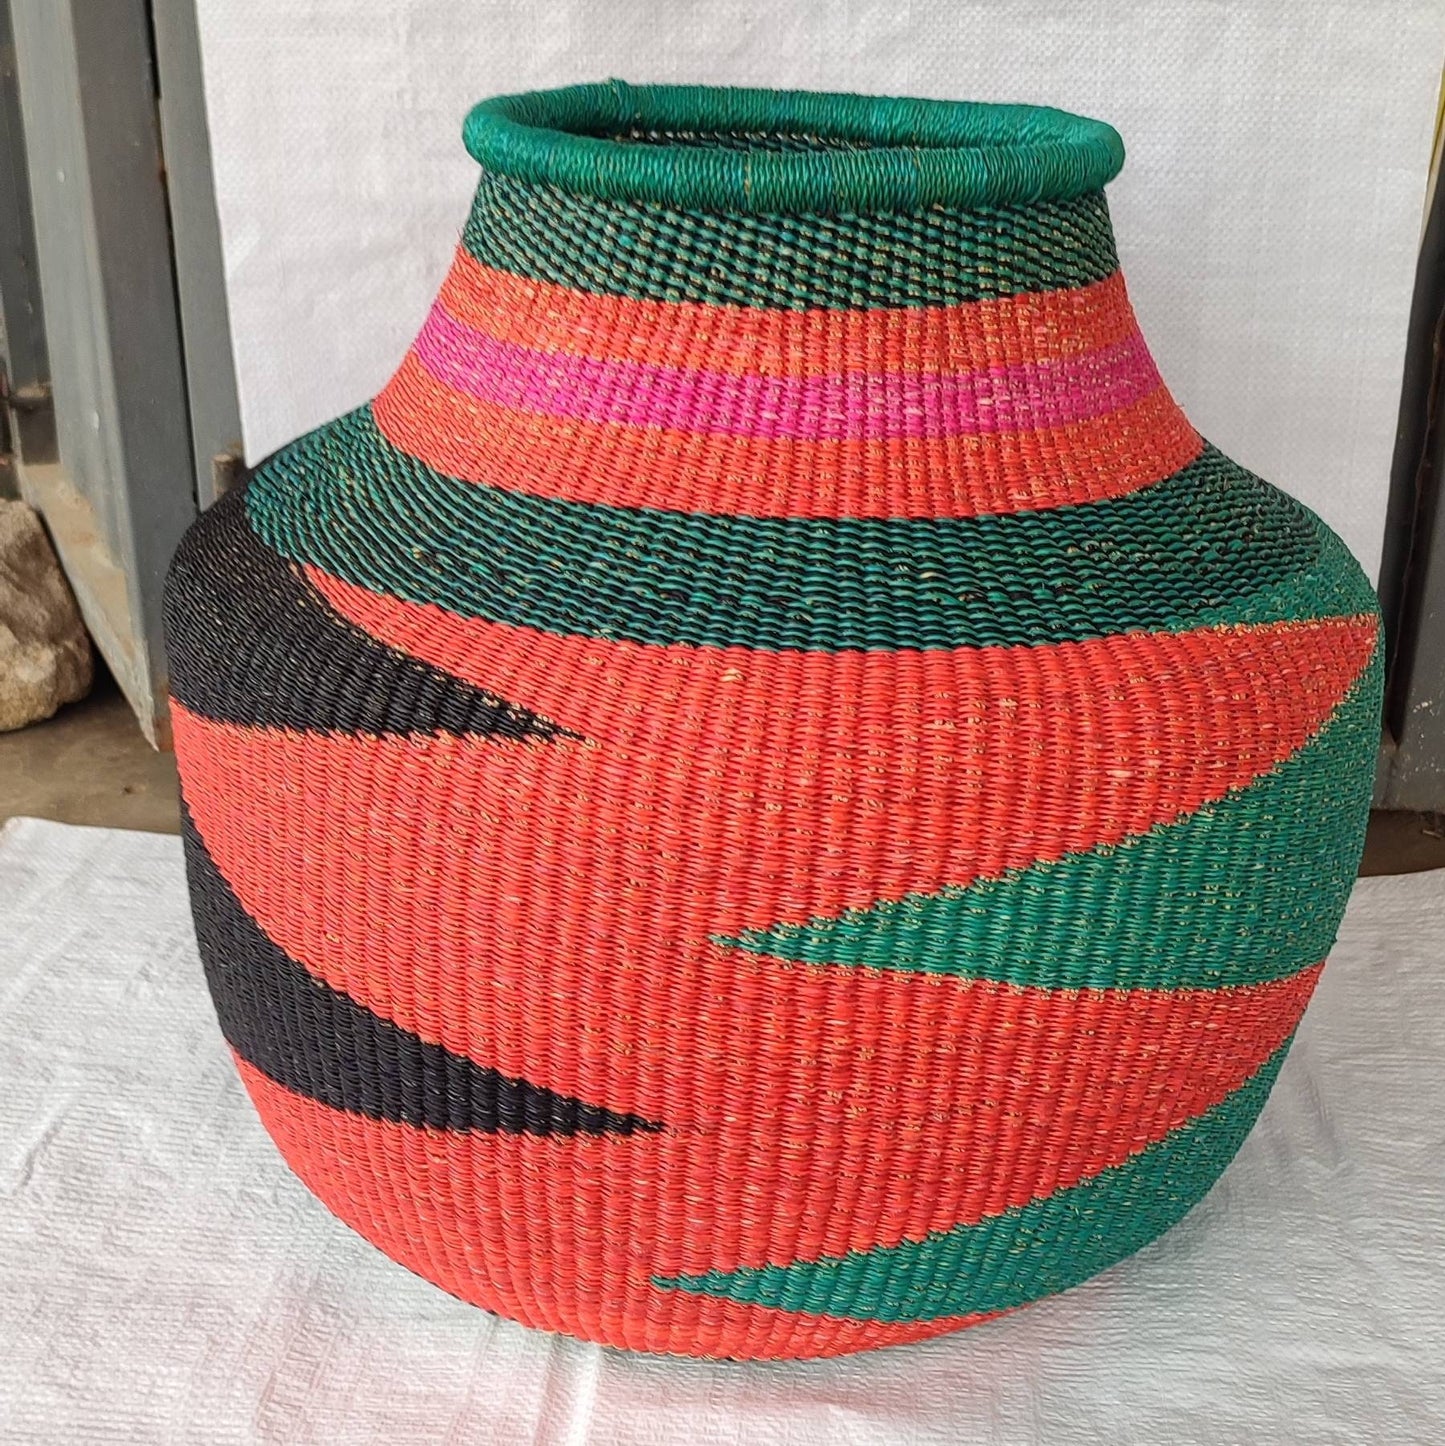 Bolga Basket, African Basket, Handmade Basket, Ghana Basket, Gift for her, Personalized gift, Flower Pot Basket 002